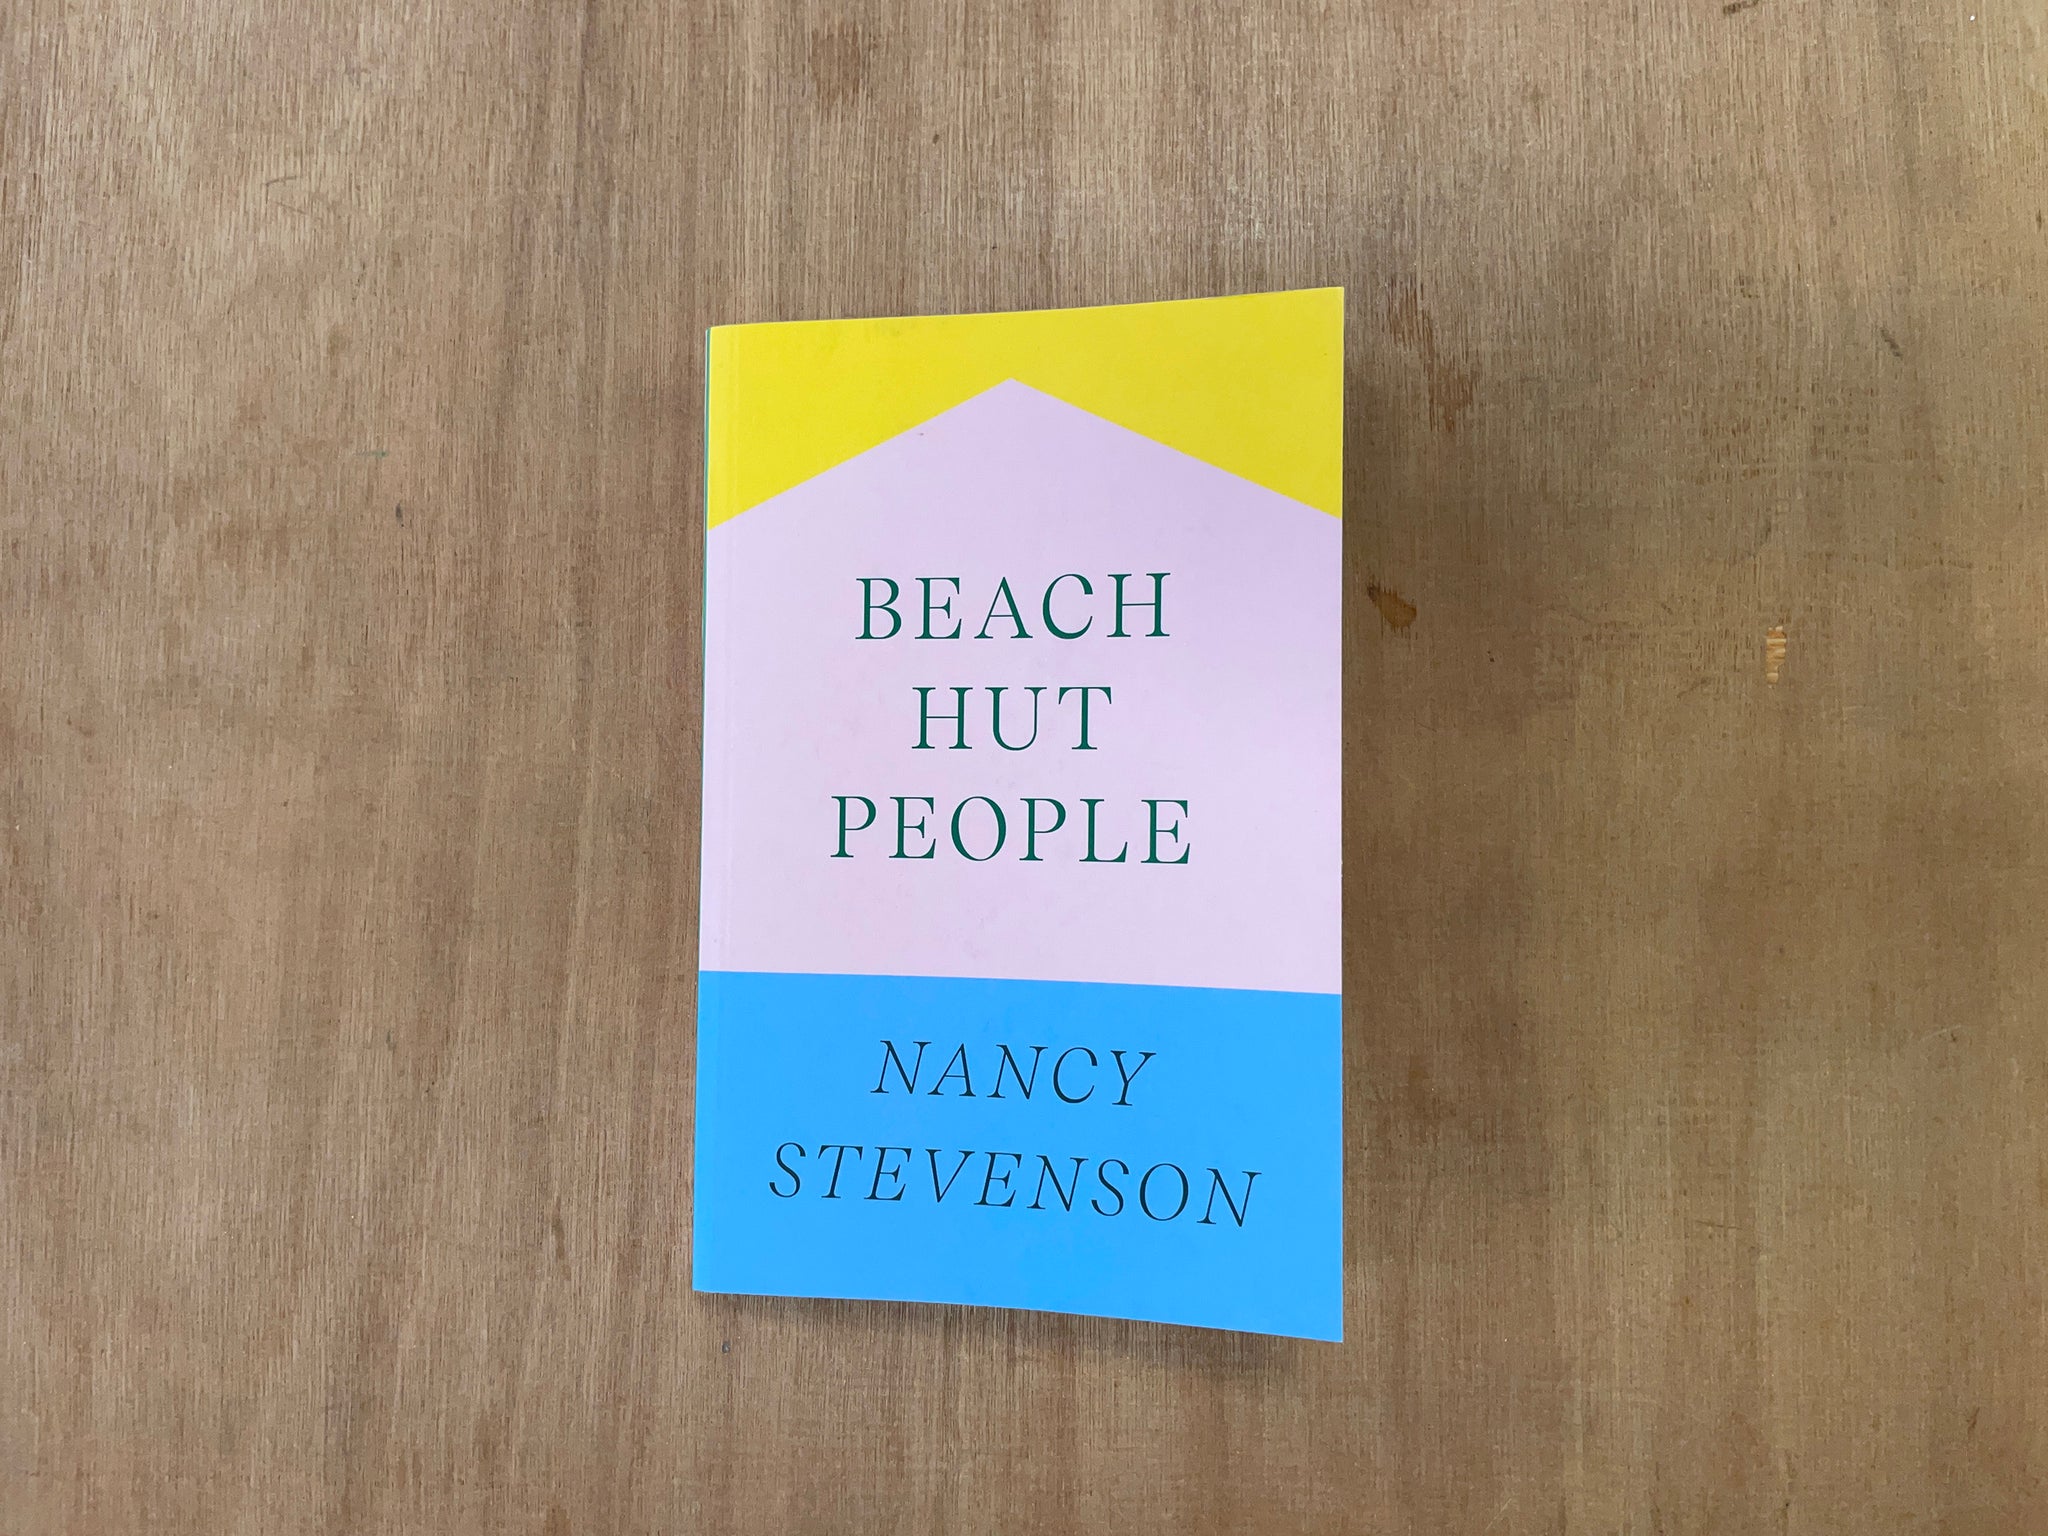 BEACH HUT PEOPLE by Nancy Stevenson